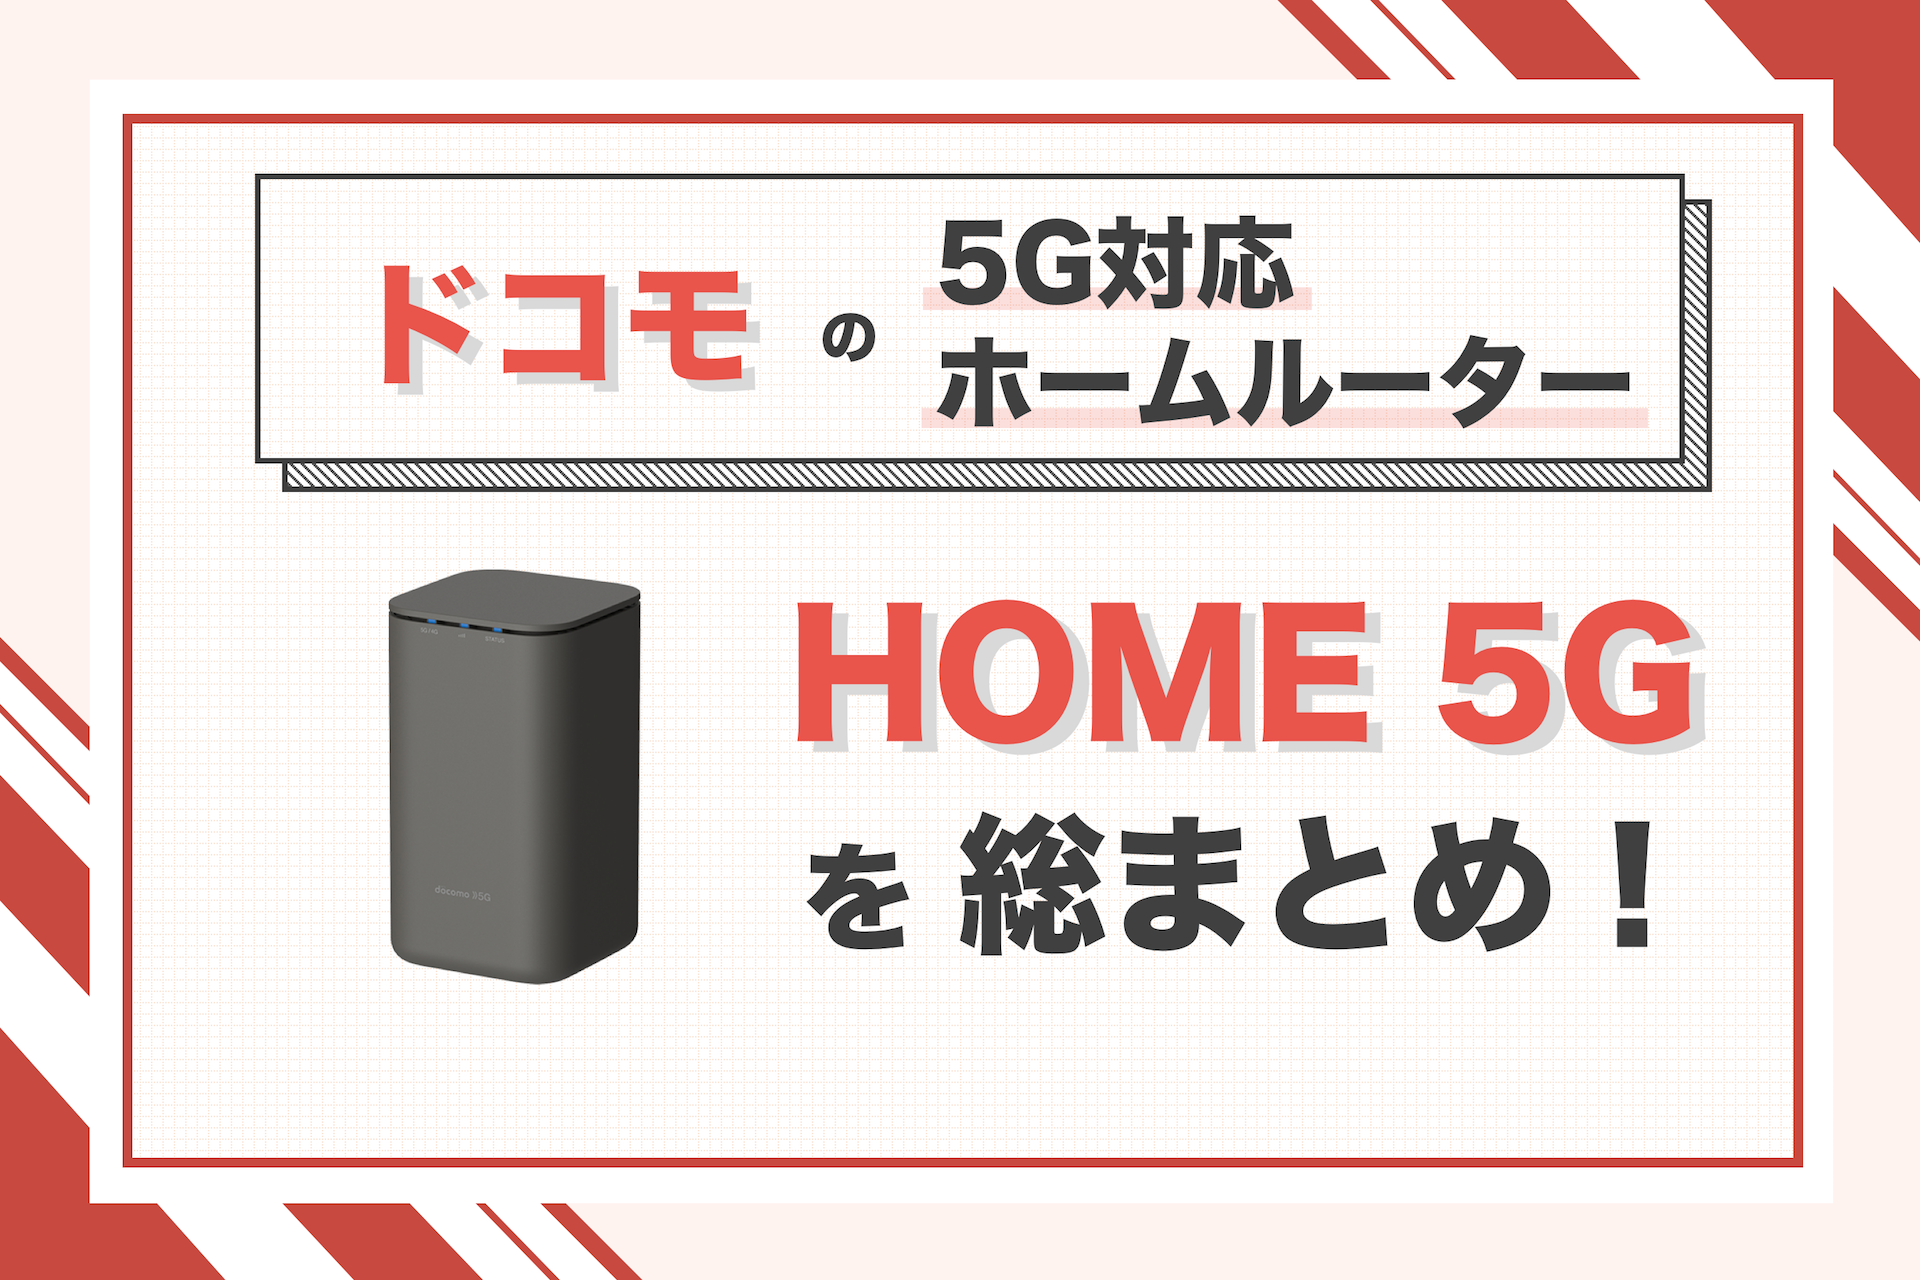 ドコモのホームルーター「home 5G」はどう？スペックや料金、速度を解説 | iPhone格安SIM通信